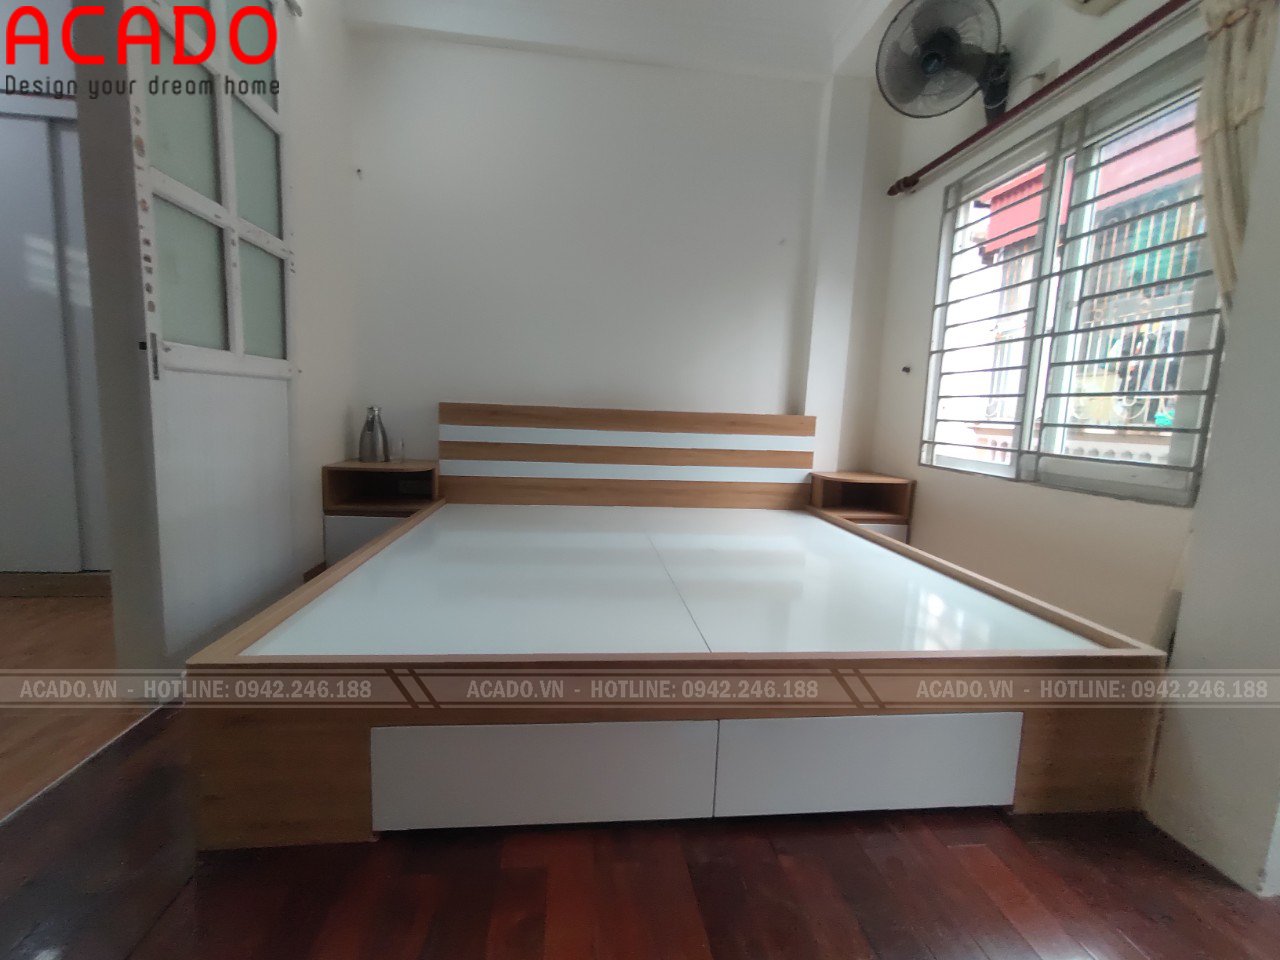 Giường ngủ gỗ công nghiệp Melamine - Thi công nội thất tại Cầu Diễn